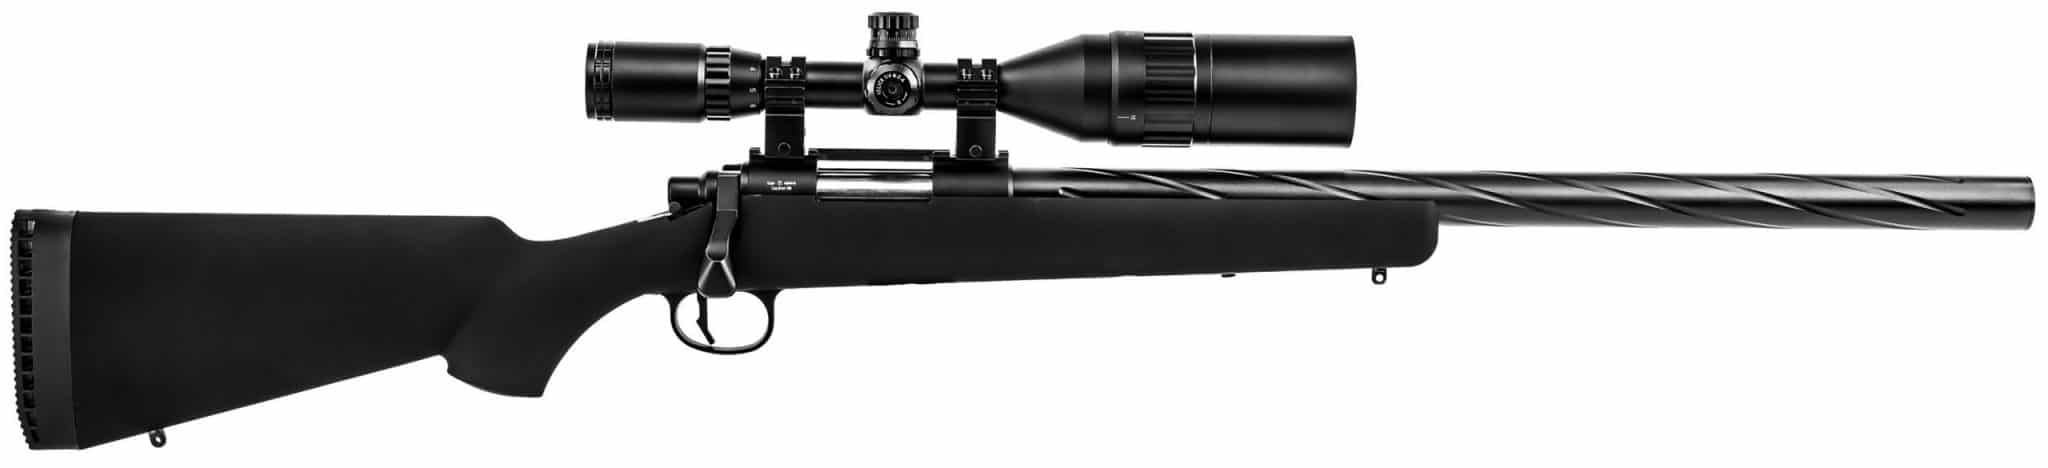 Novritsch SSG10 A1 Airsoft Sniper Rifle